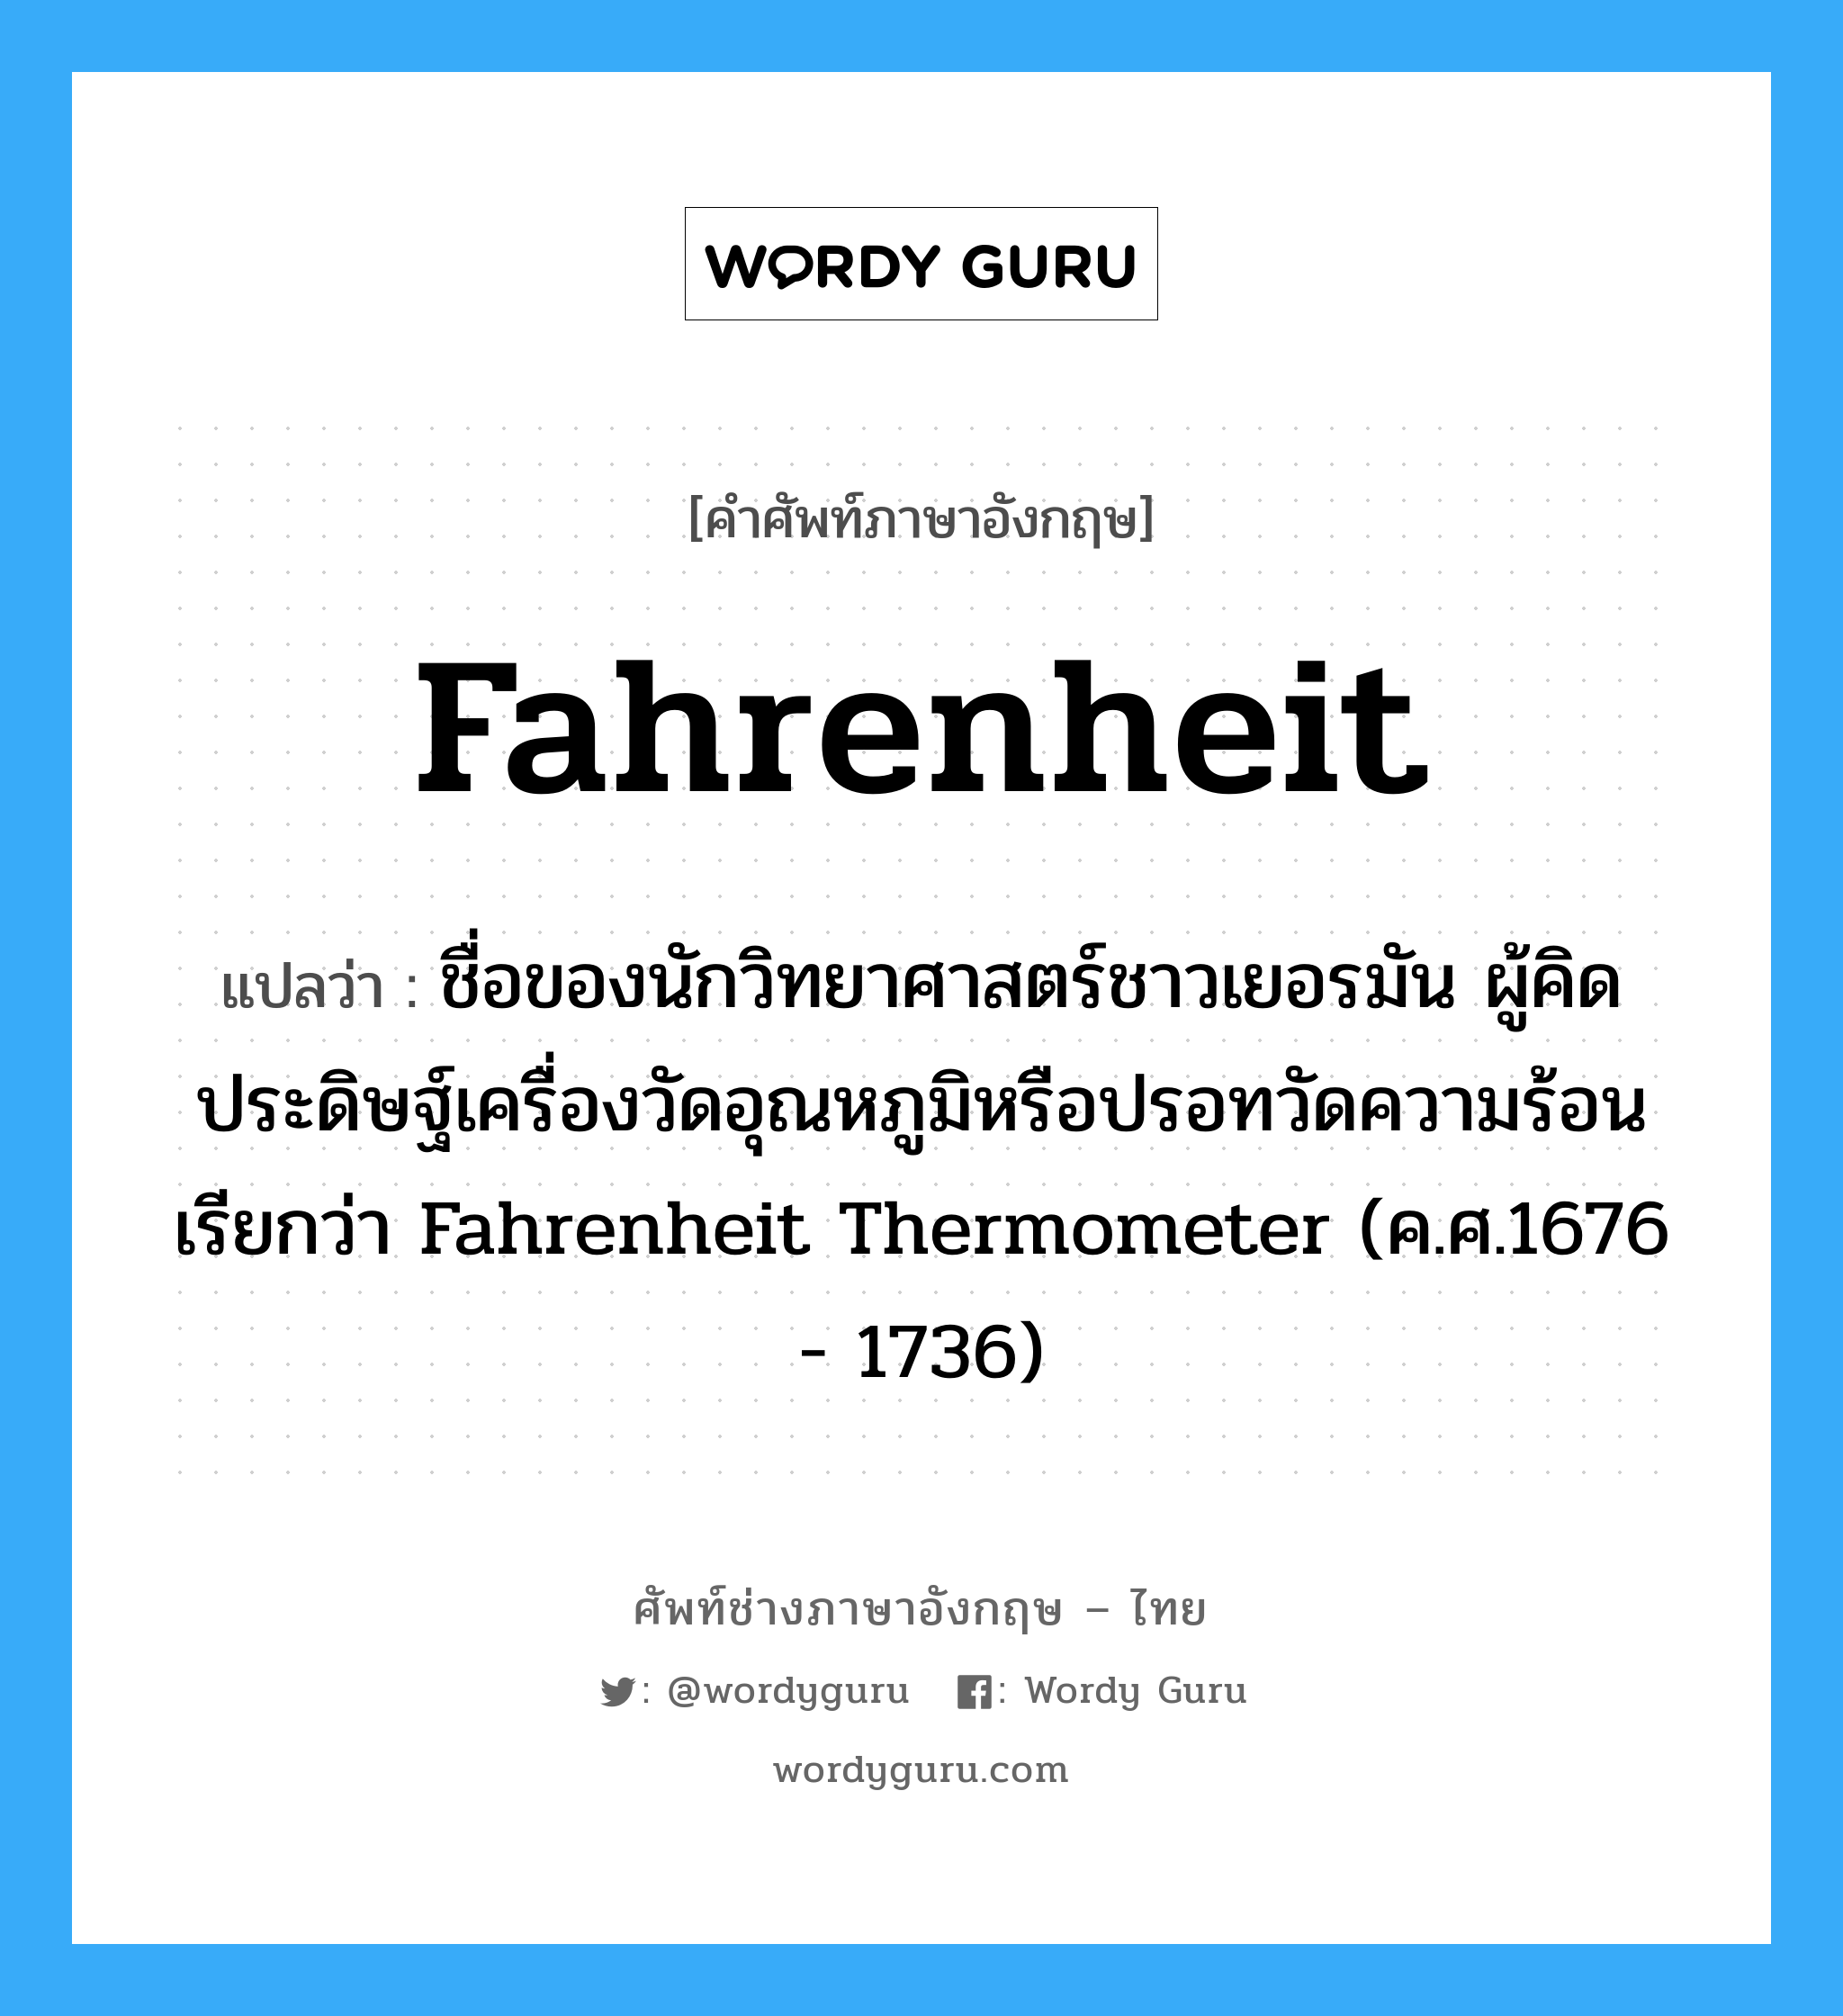 ชื่อของนักวิทยาศาสตร์ชาวเยอรมัน ผู้คิดประดิษฐ์เครื่องวัดอุณหภูมิหรือปรอทวัดความร้อนเรียกว่า Fahrenheit Thermometer (ค.ศ.1676 - 1736) ภาษาอังกฤษ?, คำศัพท์ช่างภาษาอังกฤษ - ไทย ชื่อของนักวิทยาศาสตร์ชาวเยอรมัน ผู้คิดประดิษฐ์เครื่องวัดอุณหภูมิหรือปรอทวัดความร้อนเรียกว่า Fahrenheit Thermometer (ค.ศ.1676 - 1736) คำศัพท์ภาษาอังกฤษ ชื่อของนักวิทยาศาสตร์ชาวเยอรมัน ผู้คิดประดิษฐ์เครื่องวัดอุณหภูมิหรือปรอทวัดความร้อนเรียกว่า Fahrenheit Thermometer (ค.ศ.1676 - 1736) แปลว่า Fahrenheit